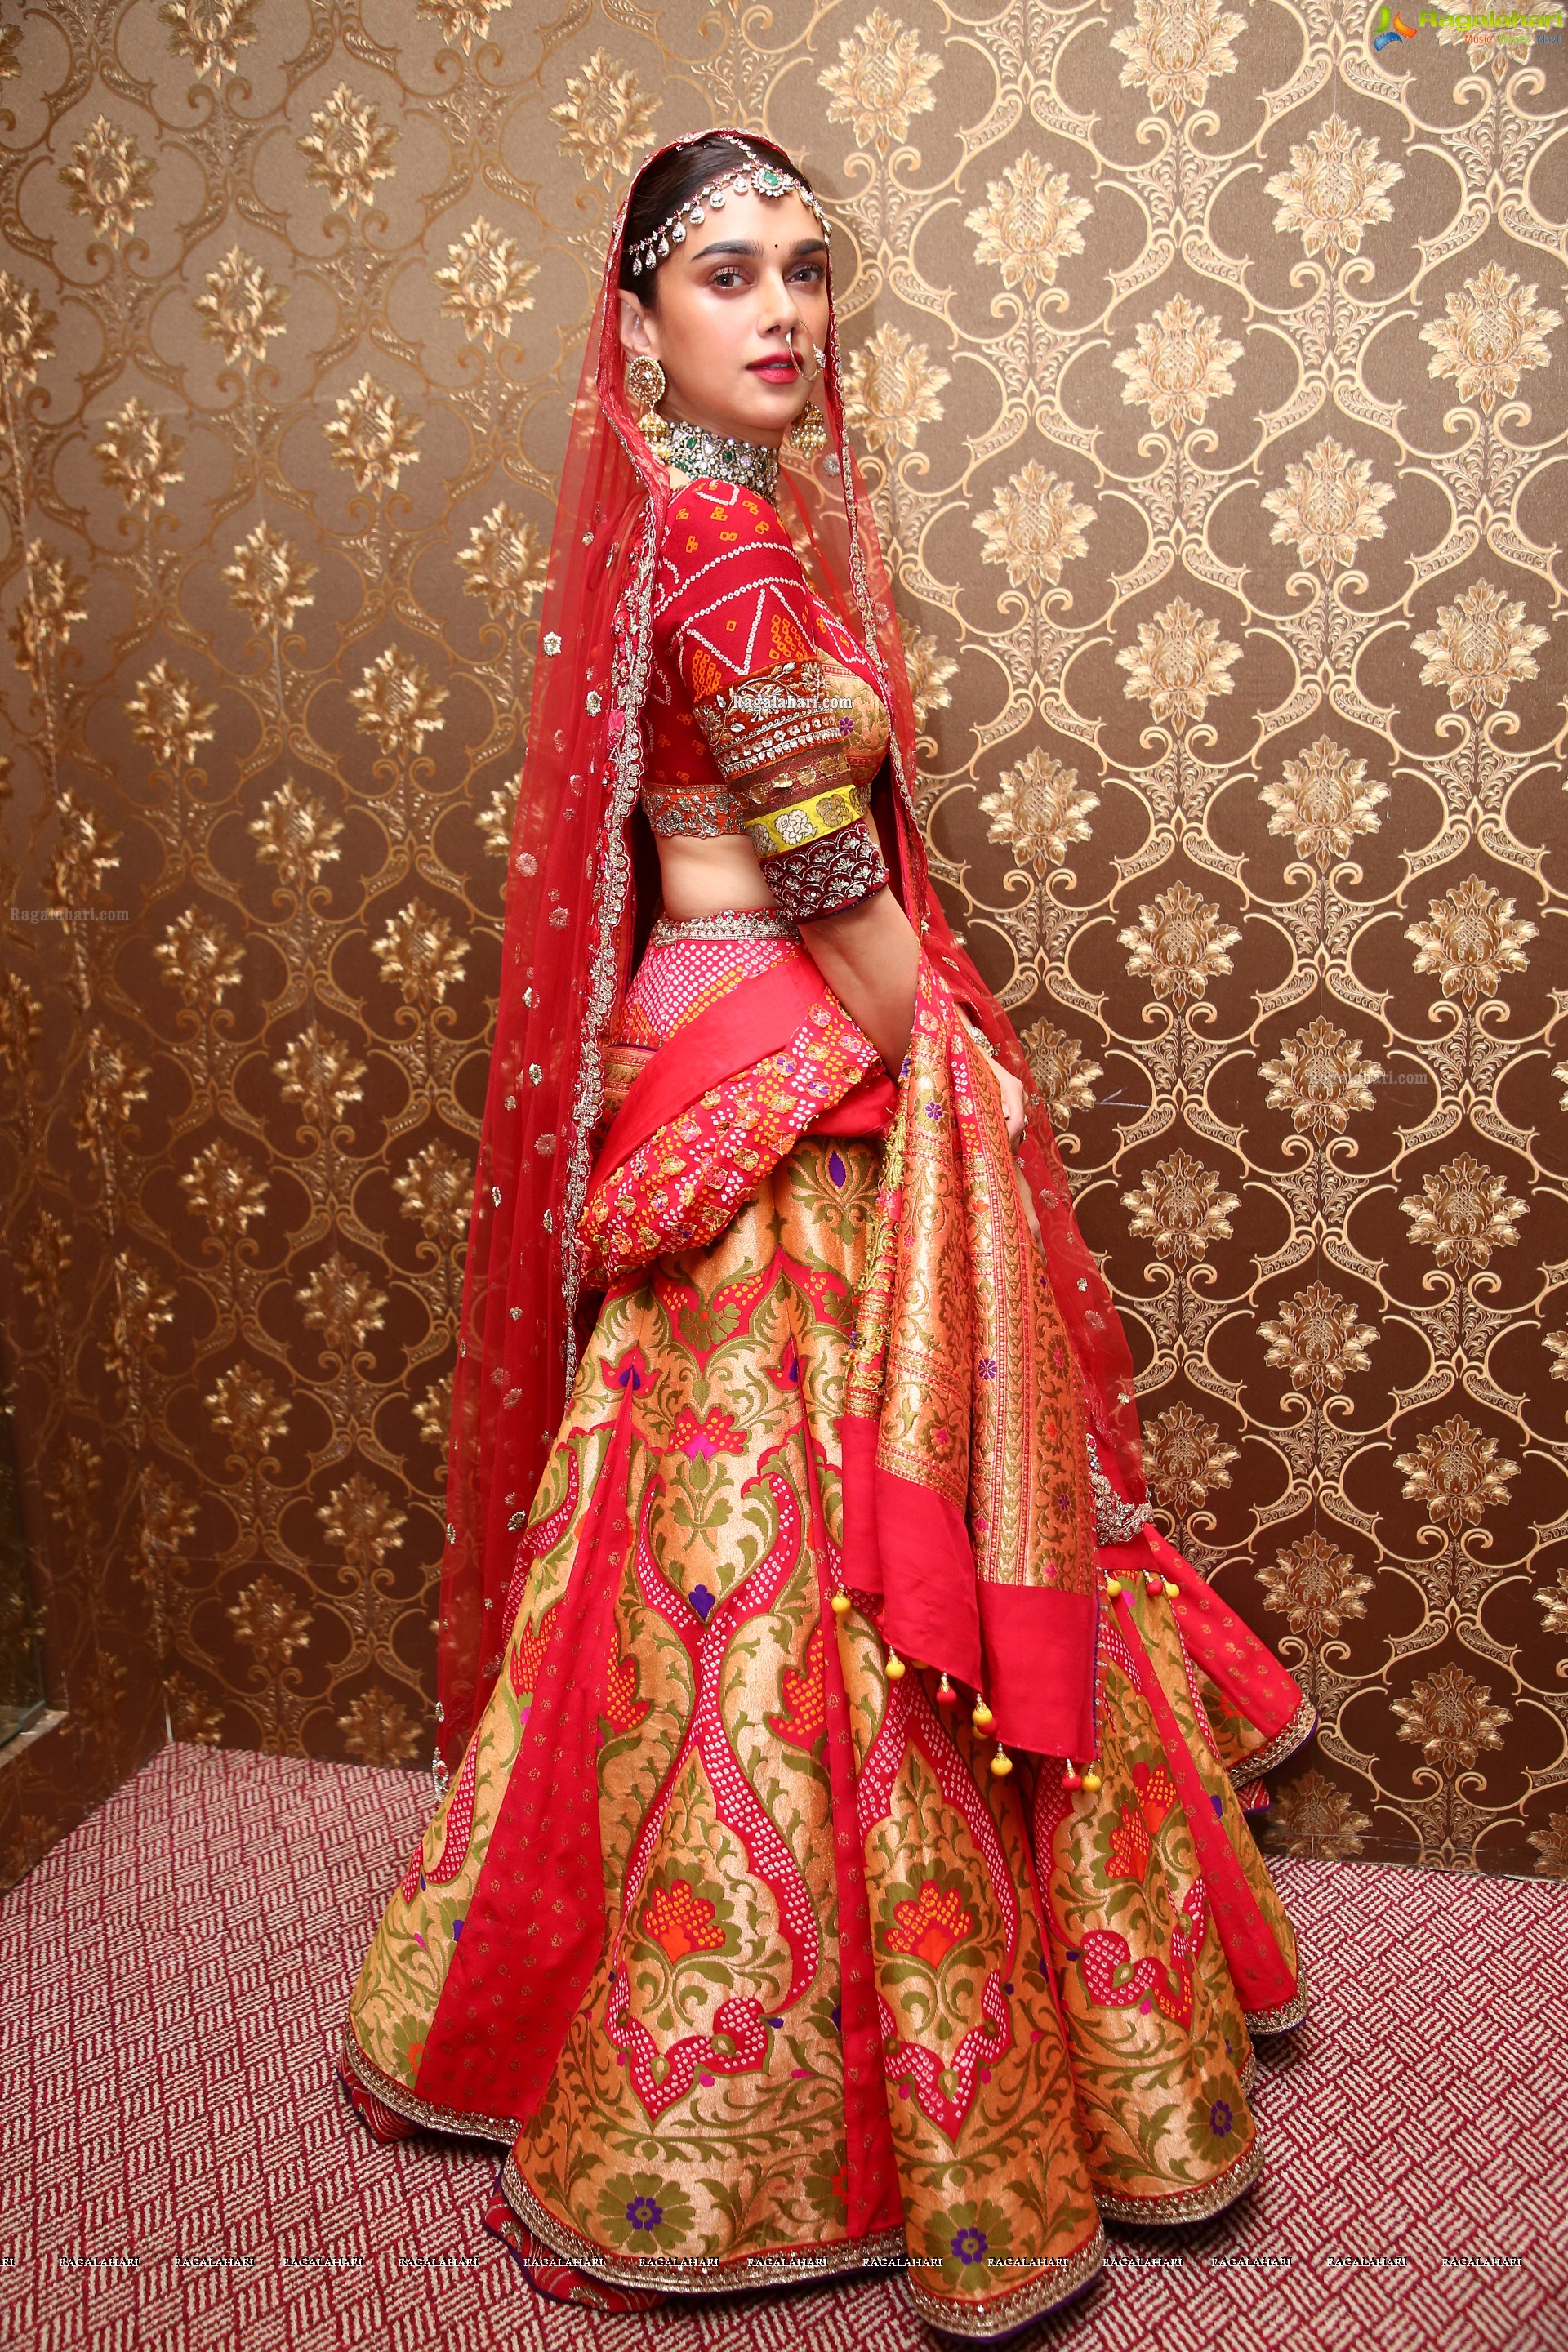 Aditi Rao Hydari at Shaadi by Marriott at Hyderabad Mariott Hotel HD Gallery, Images